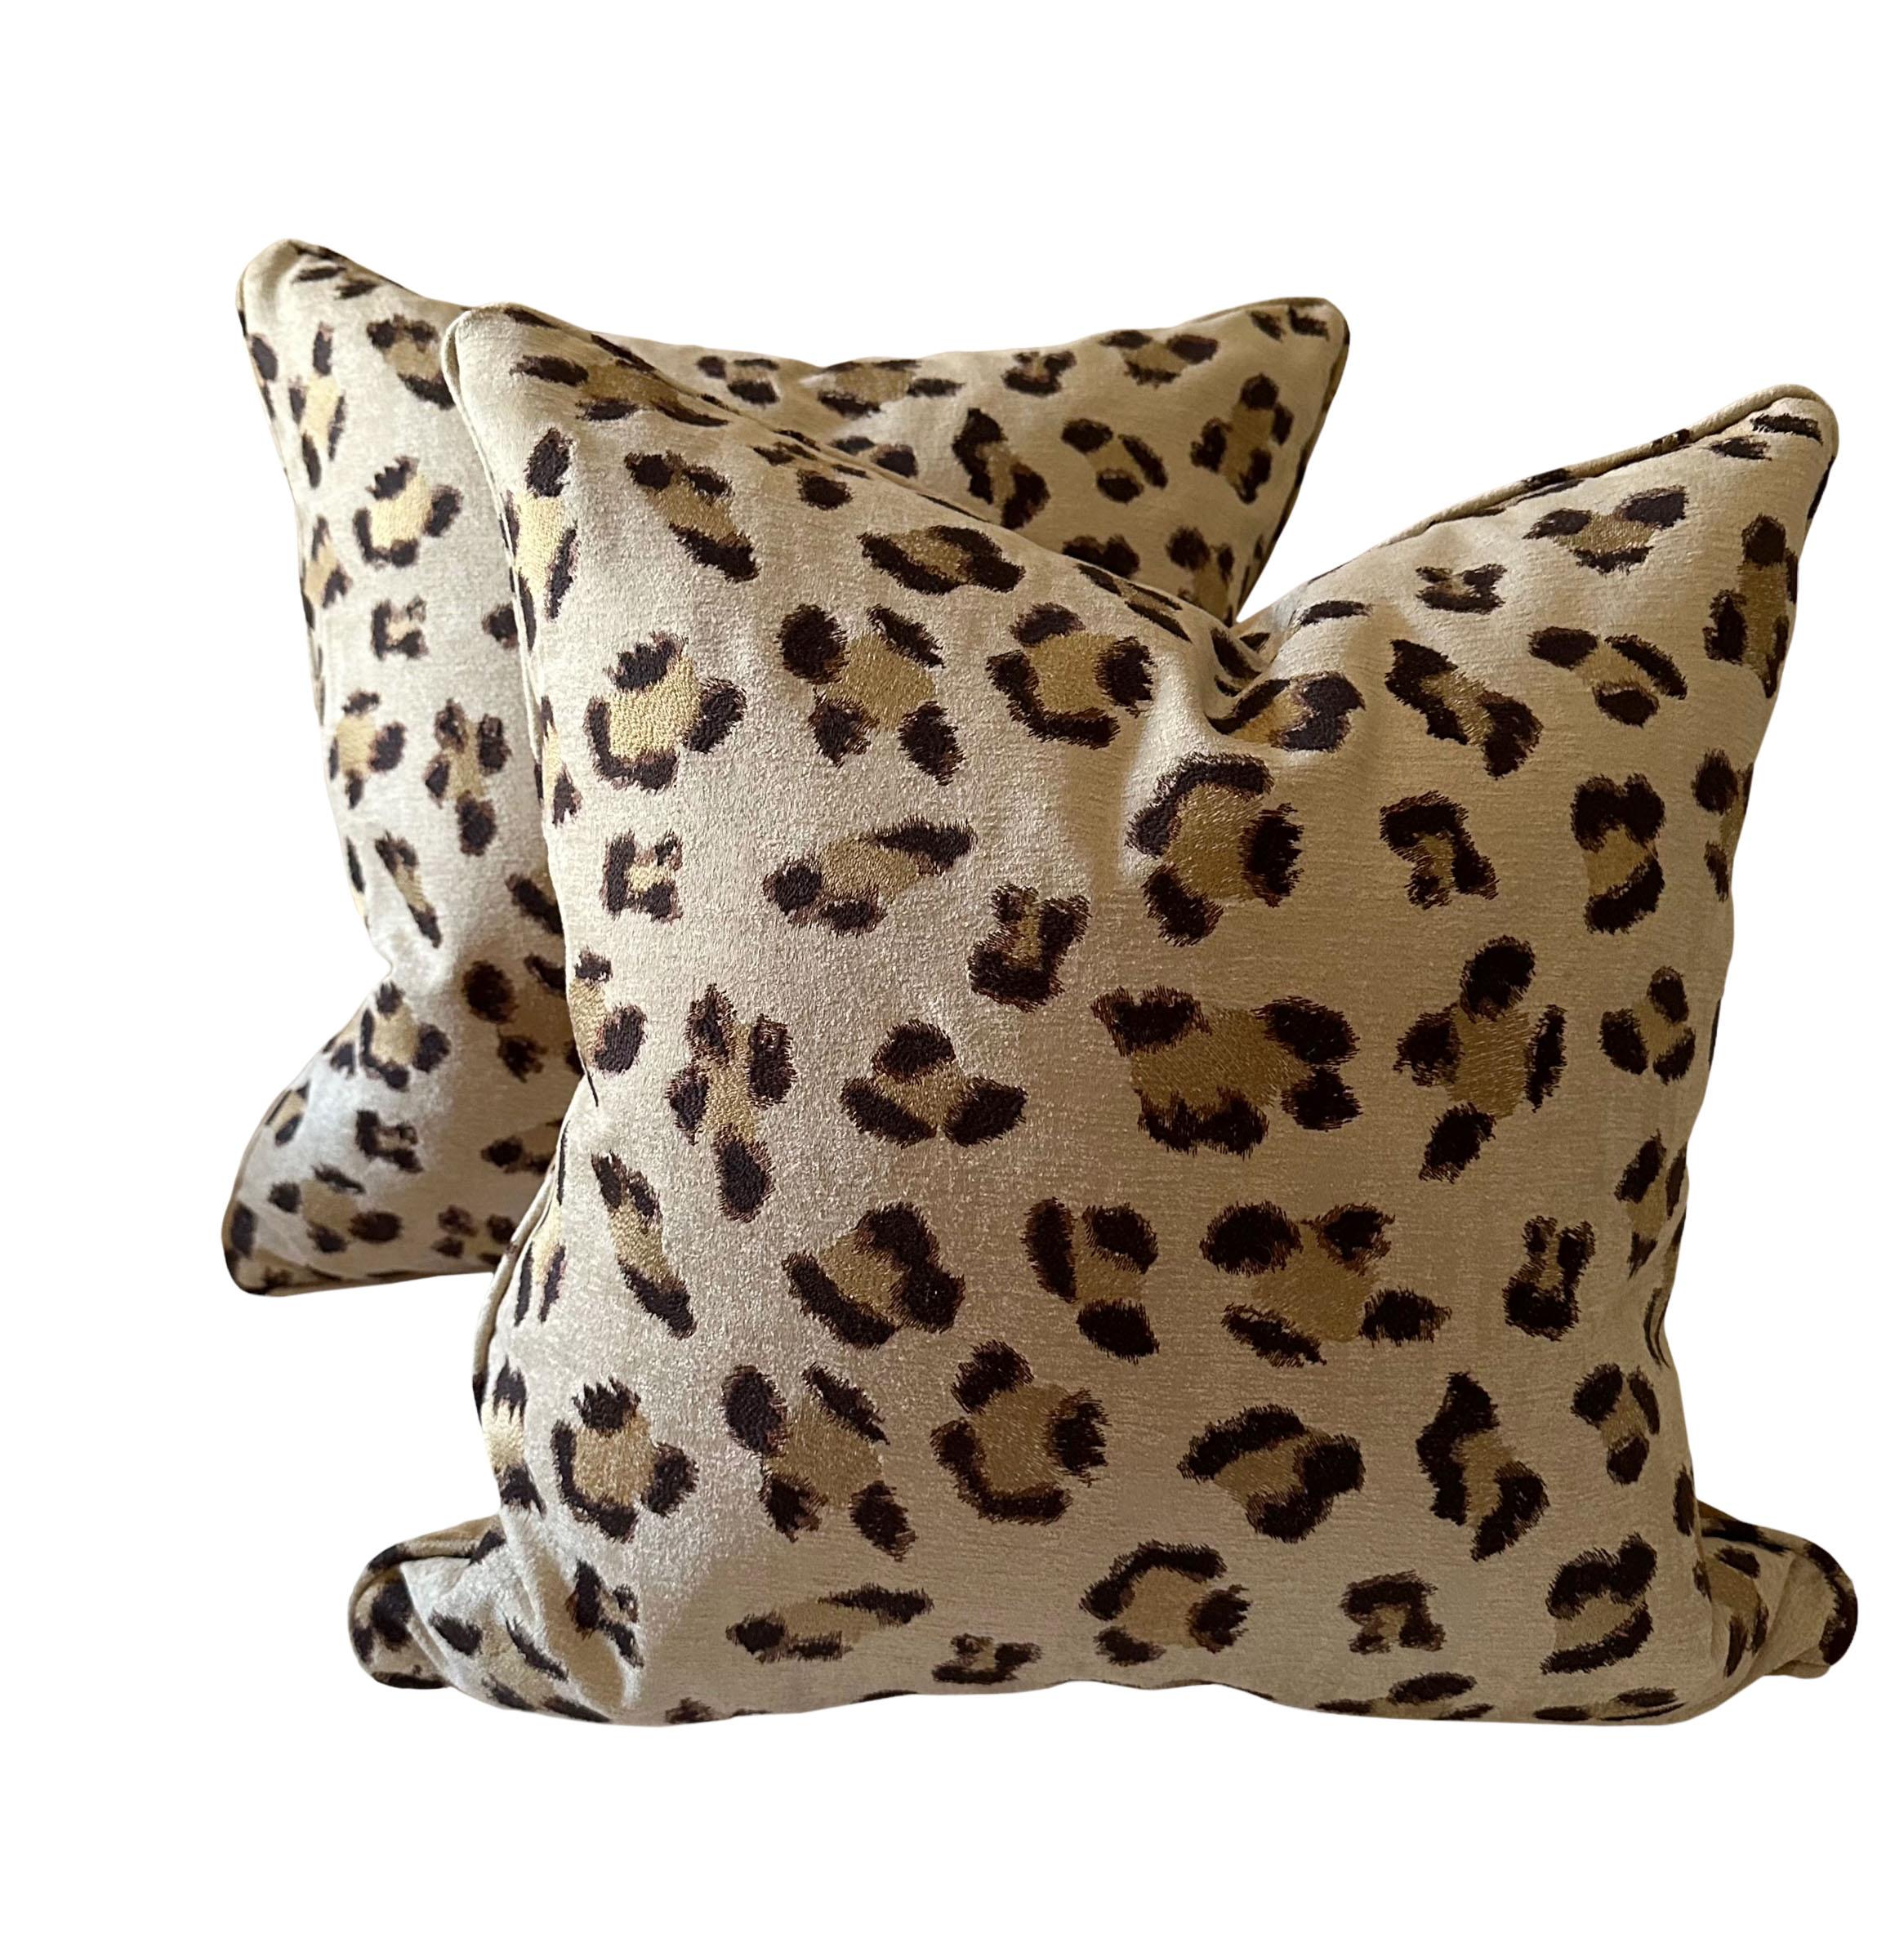 Italian Cream Leopard Scalamandre Pillows, a Pair